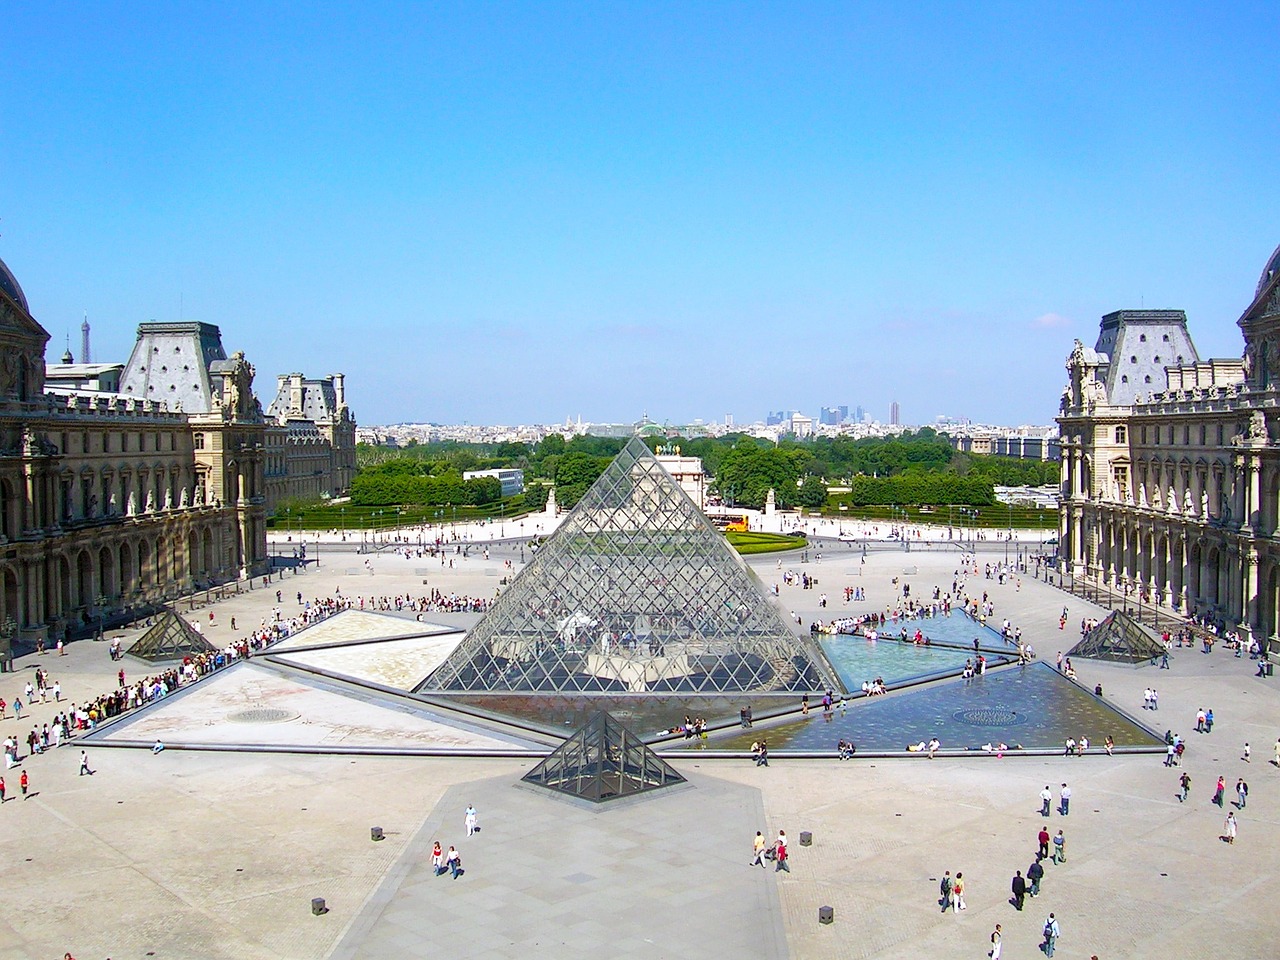 巴黎羅浮宮的金字塔中庭是結構玻璃與鋼纜拉力構出的組合，唯有在高科技時代才能完成如此輕巧透明的金字塔。(圖片來源：pixabay TJMeador)